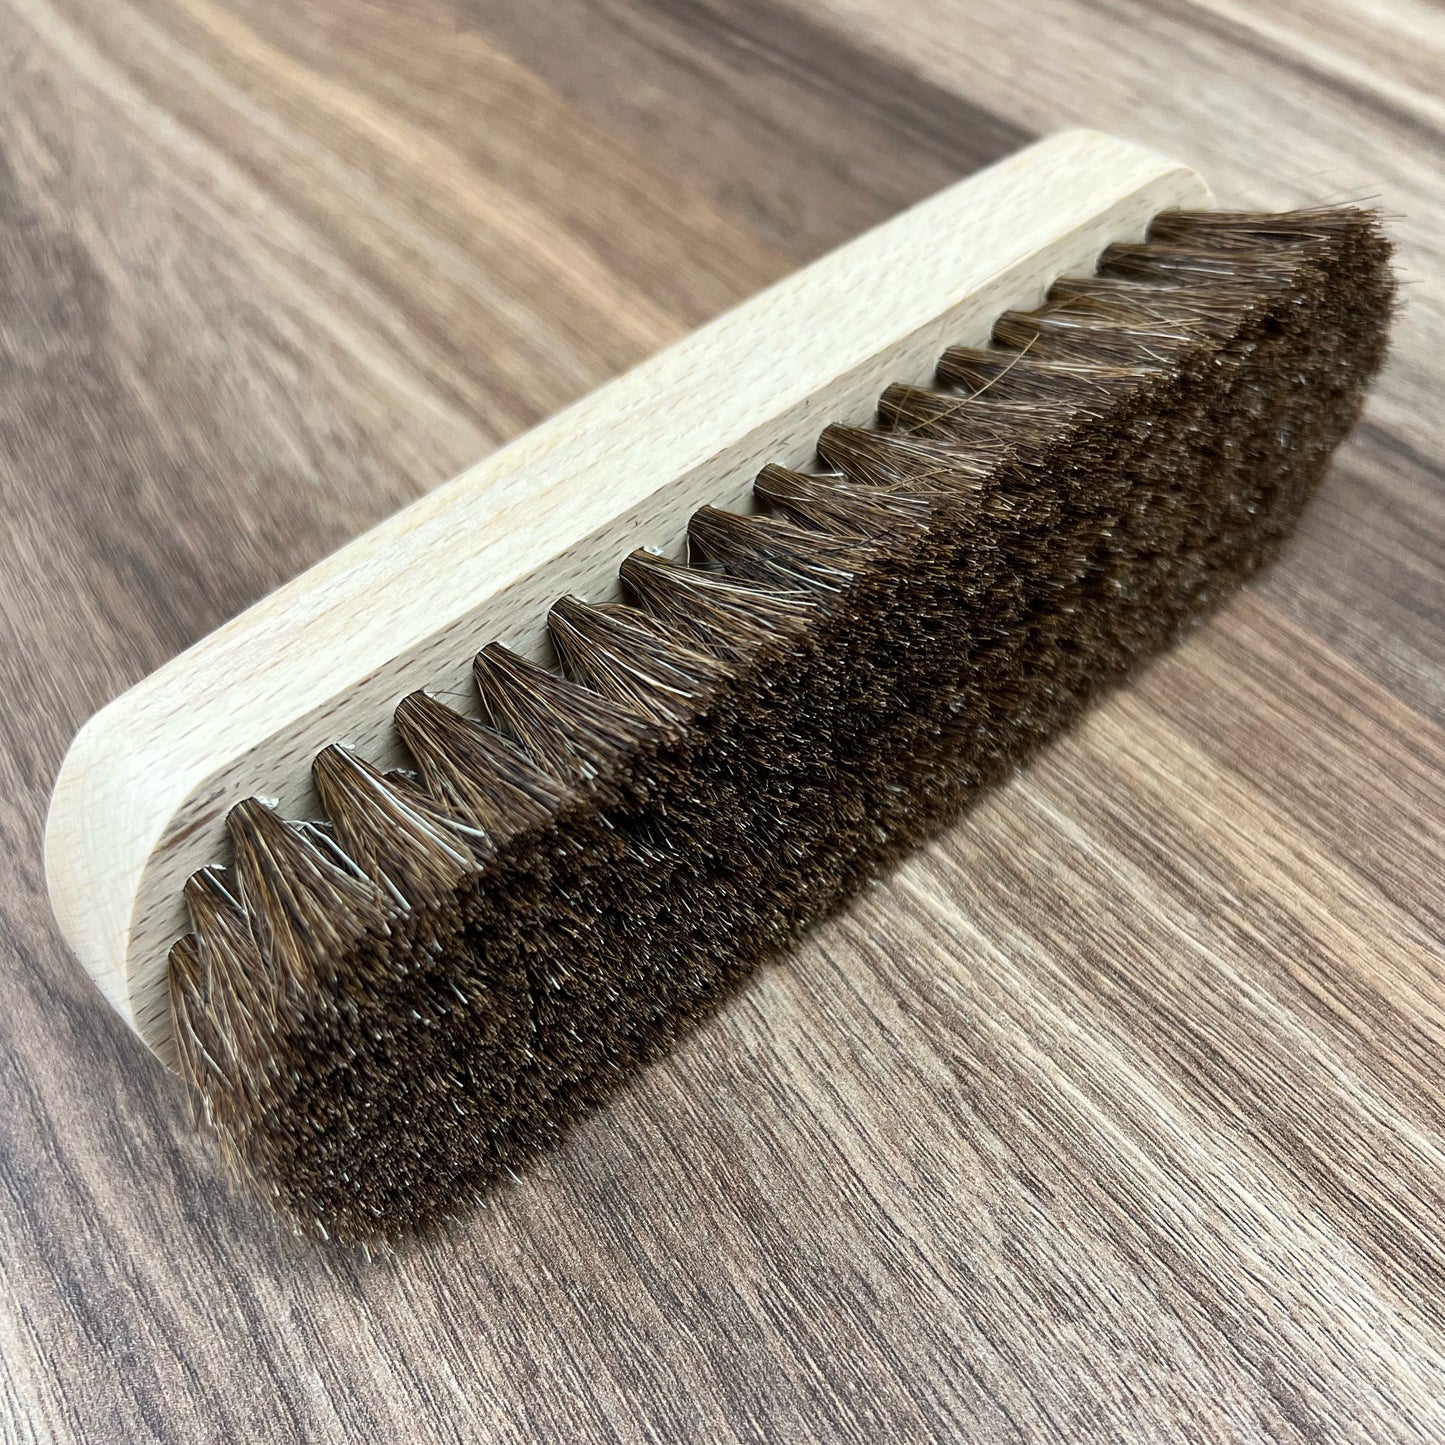 Saphir large polishing brush 100% horse hair